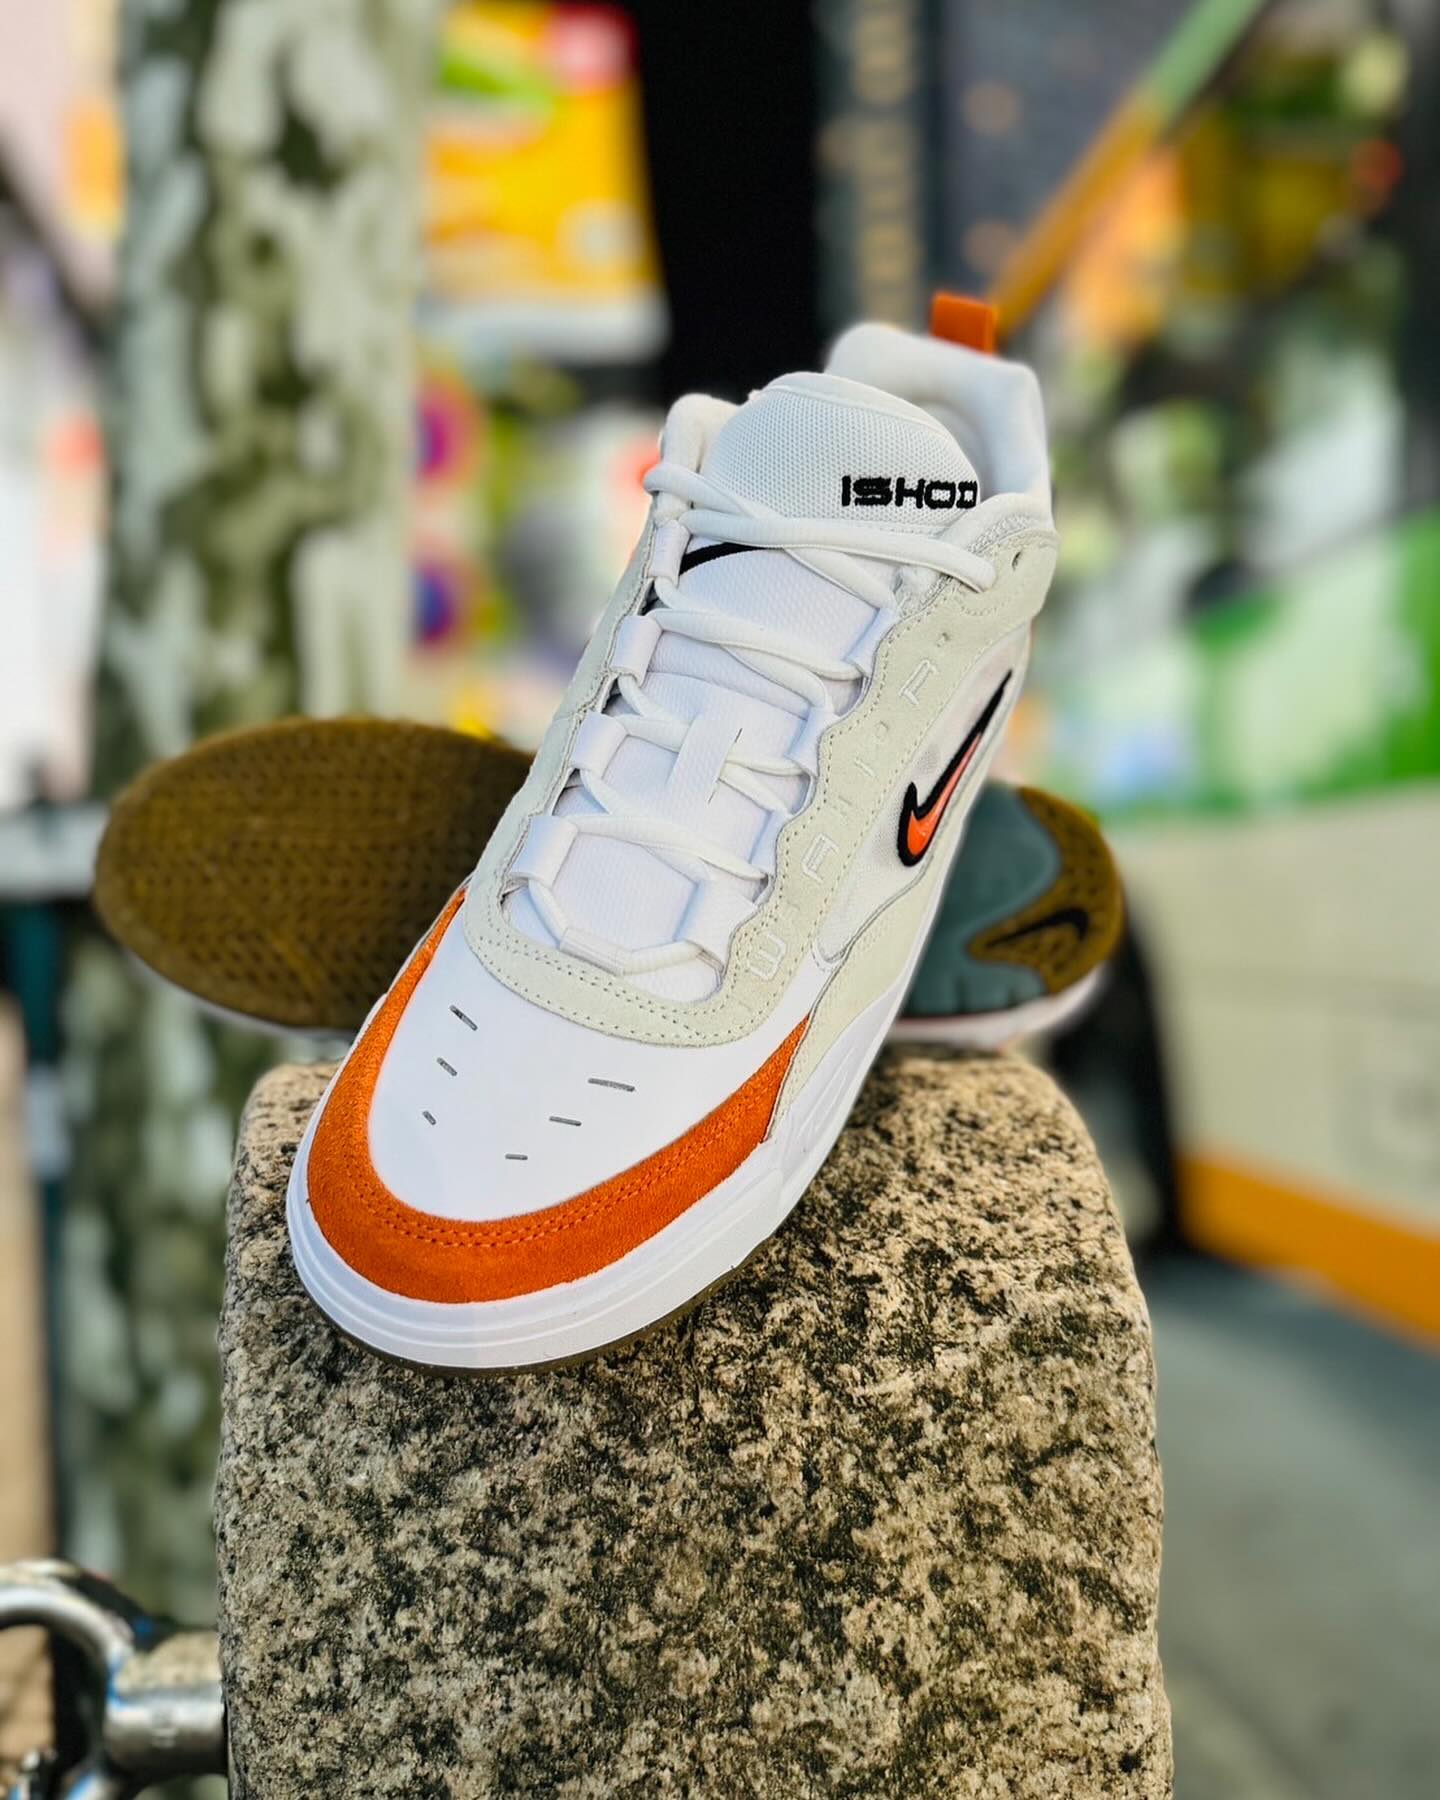 5月1日(水)発売NikeSB / Air Max IshodIshod wairの2弾目となるシグネチャーモデルIshod 2(Air Max Ishod)から春夏にピッタリな柑橘系カラー"White/Orange" の新色がリリース。90年代のアイコニックなバスケットシューズの要素を取り入れて、スケートに最適化し、耐久性を追求した一足。Max Airのテクノロジーが搭載されており、露出したAir部分やサイドメッシュは90'sレトロなハイテクを彷彿とさせます。※instant店舗、Web(5/1 AM9:00〜)にて発売いたします。#nikesb#ishodwair@nikesbdojo#ishod2#airmaxishod#Instantskateshop#instantskateboards